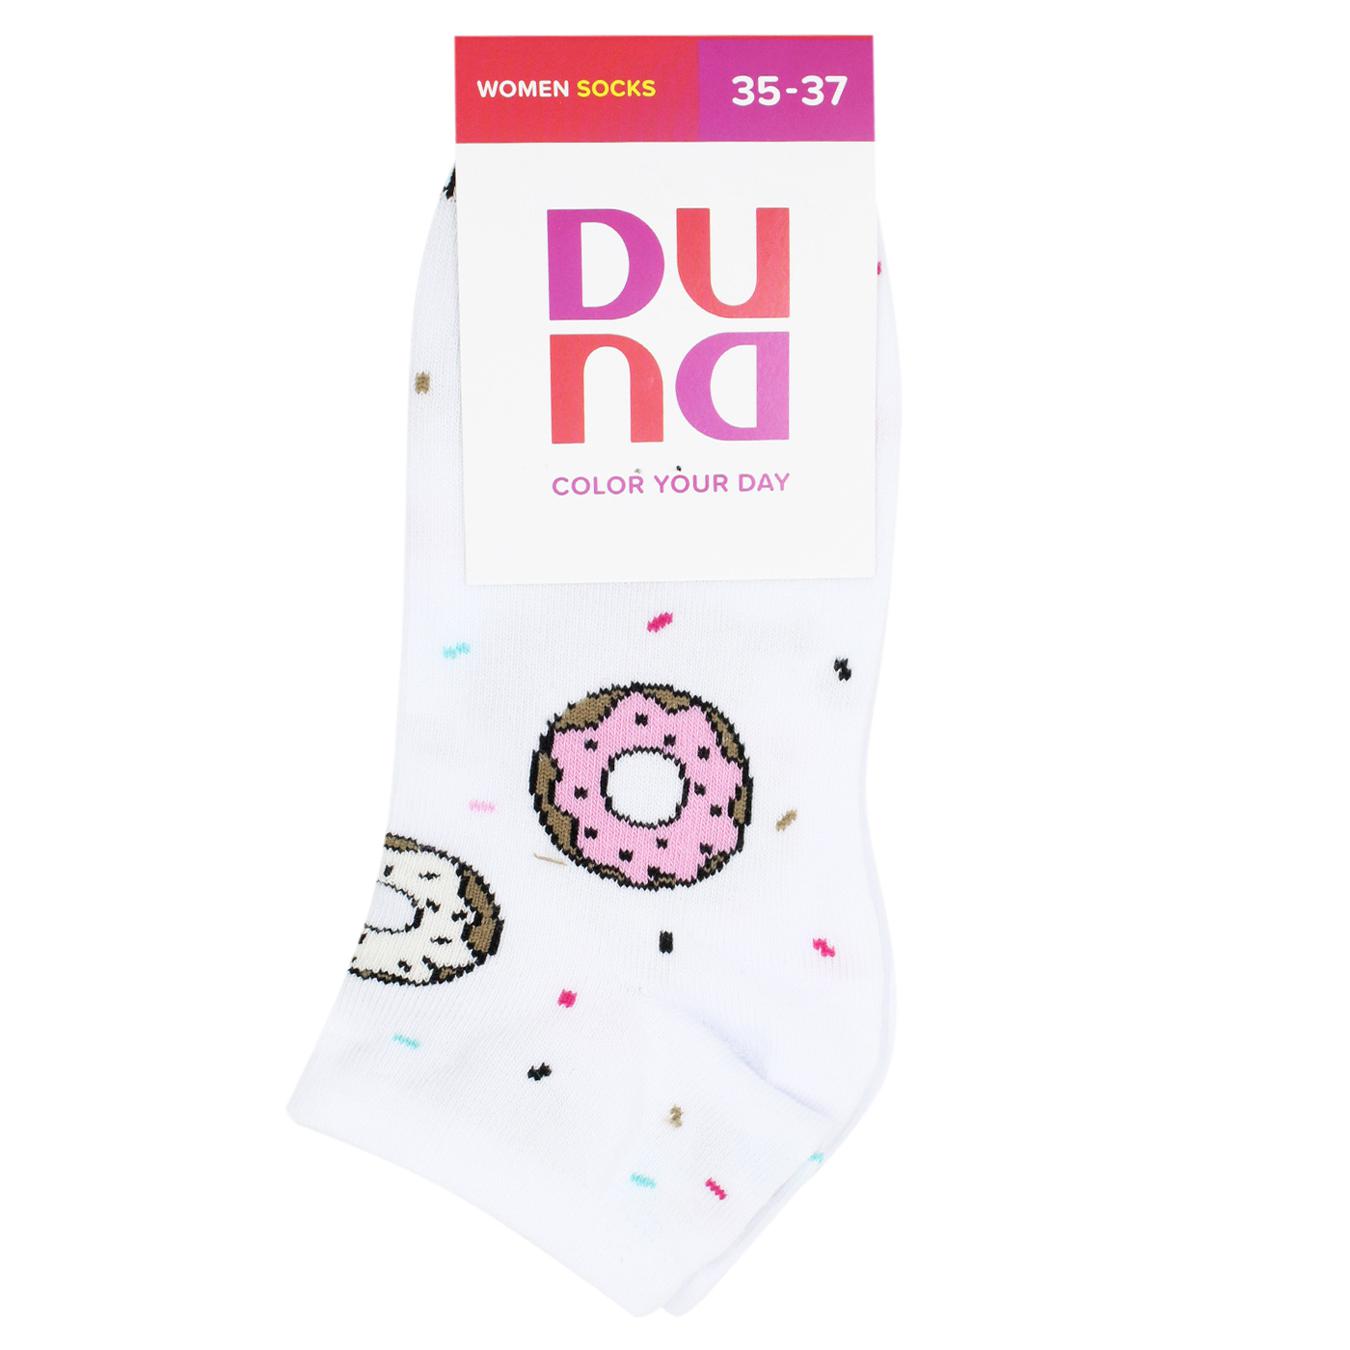 Women's socks Duna white 21-23 years.